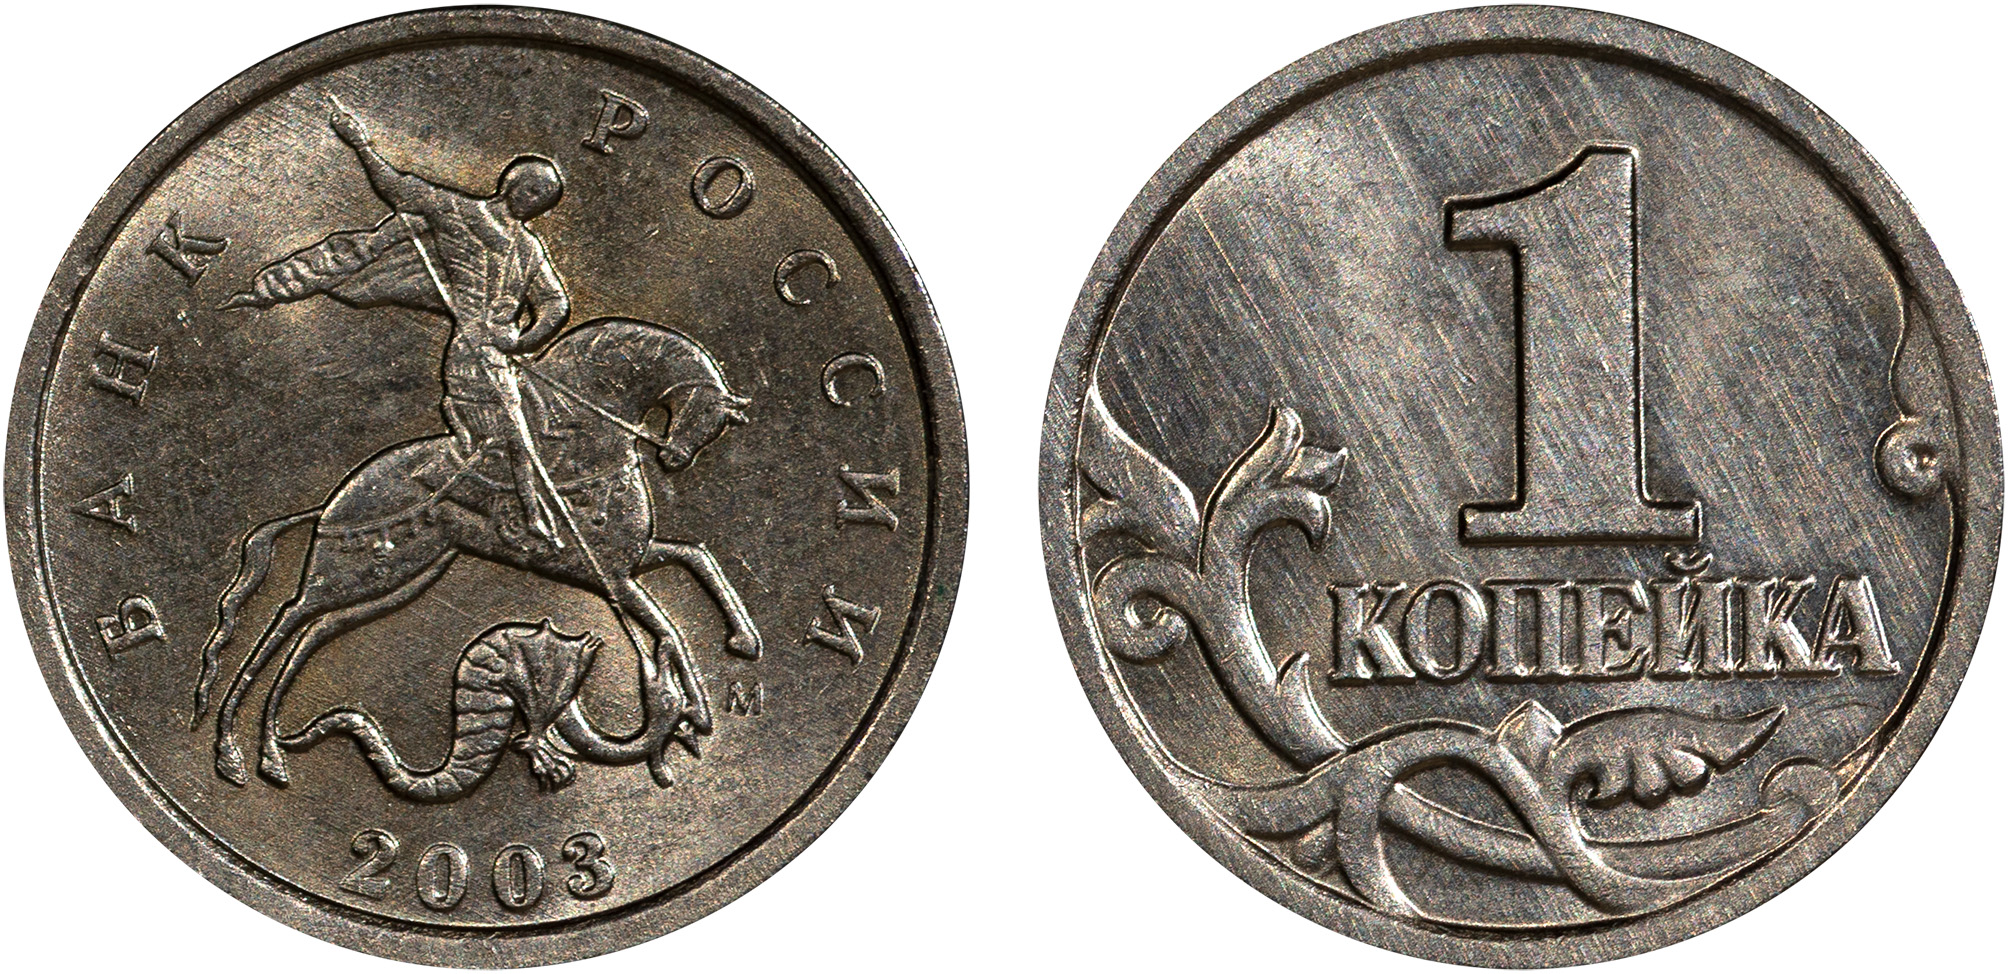 1 Копейка 2003 год. М (Московский монетный двор)